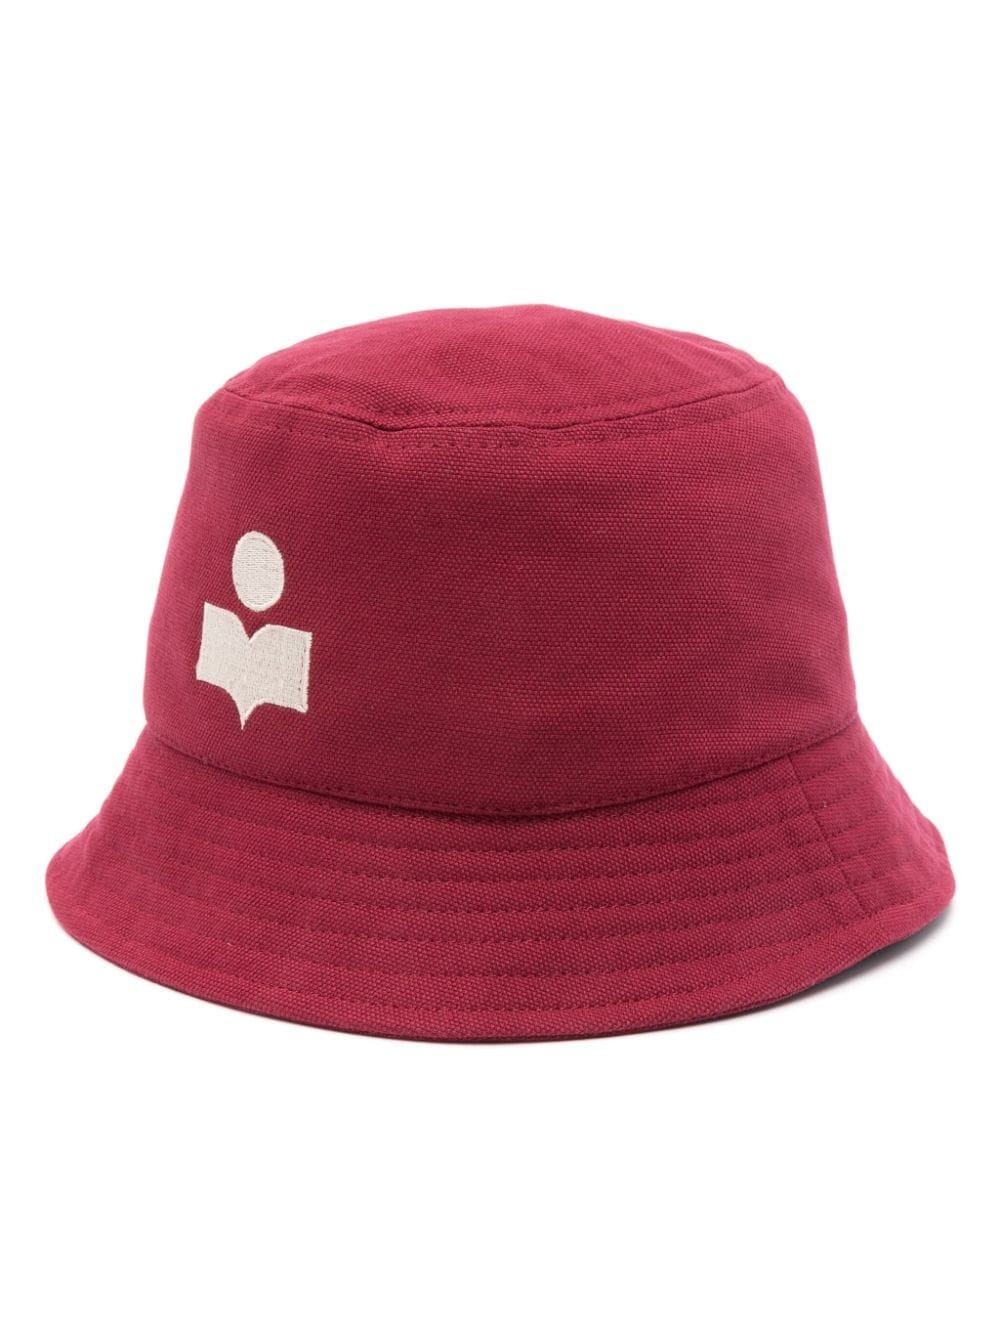 logo-embroidered bucker hat - 1